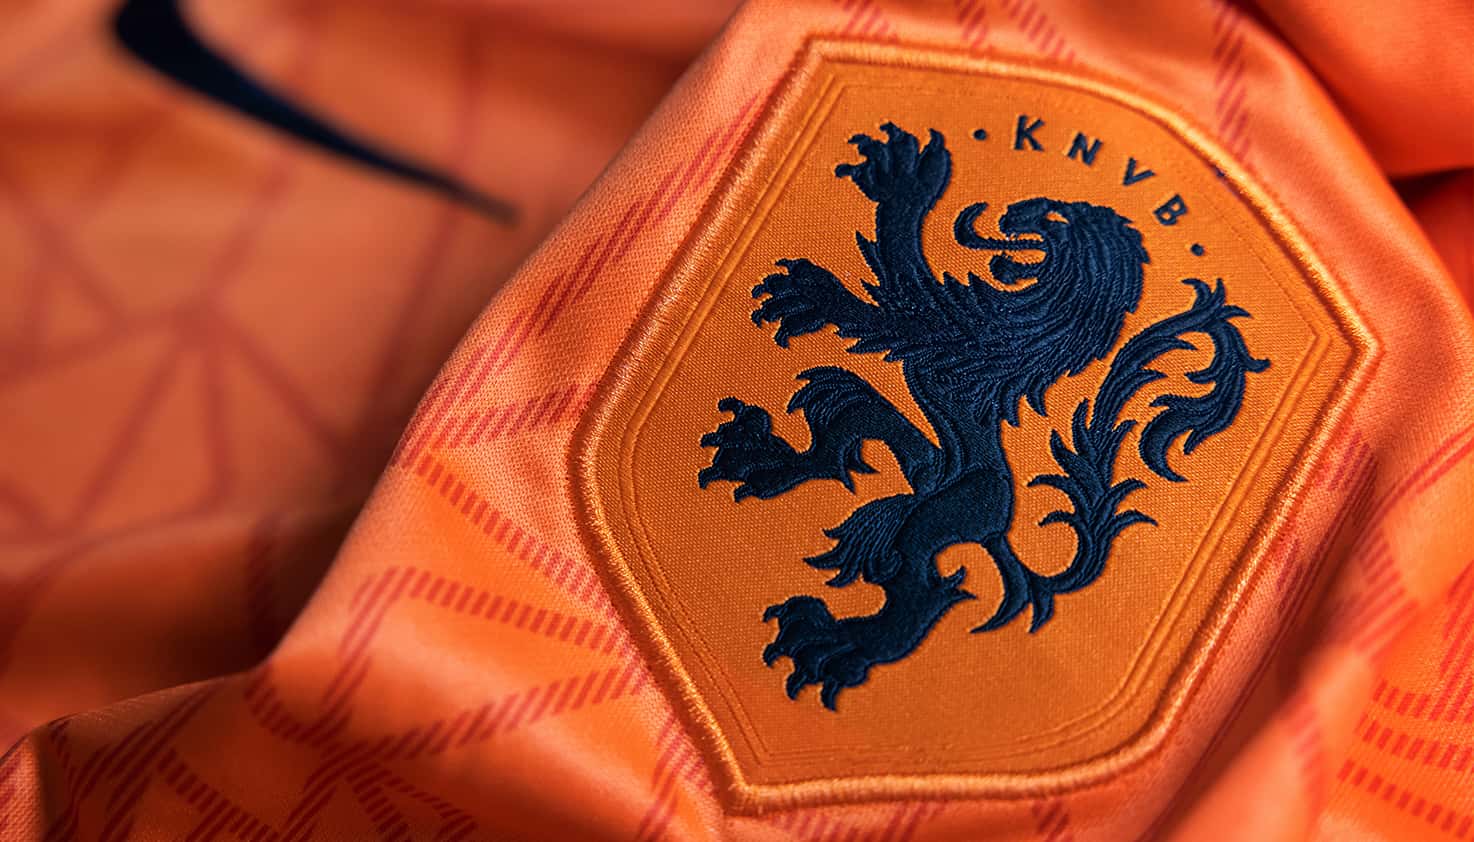 Oranje EK elftal wedstrijd thuis shirt, rechts op de borst is de Oranje Leeuw te zien en het logo van KNVB.